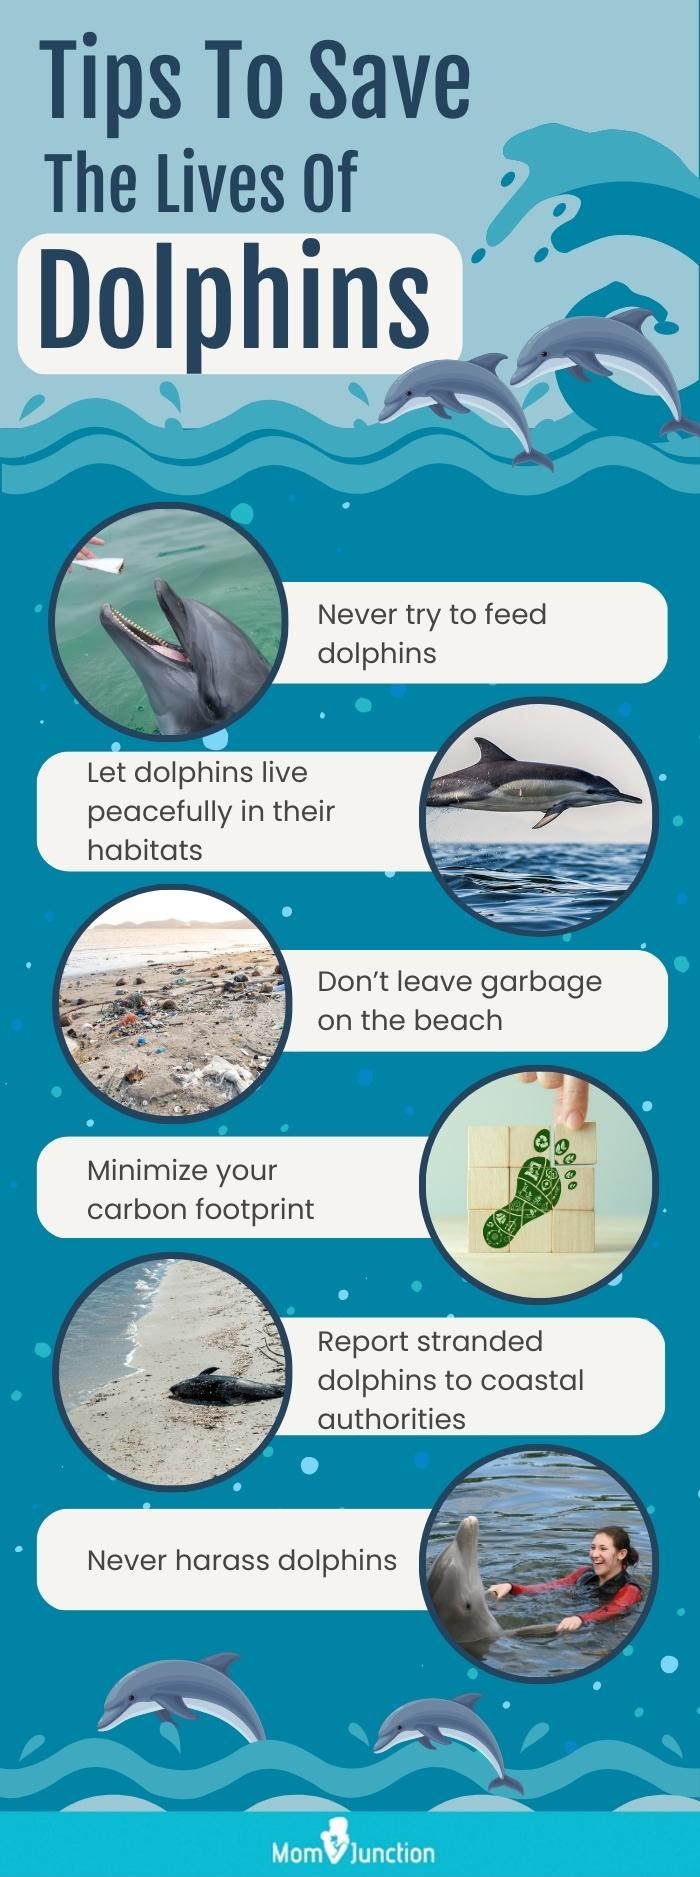 拯救海豚生命的贴士(资料图)